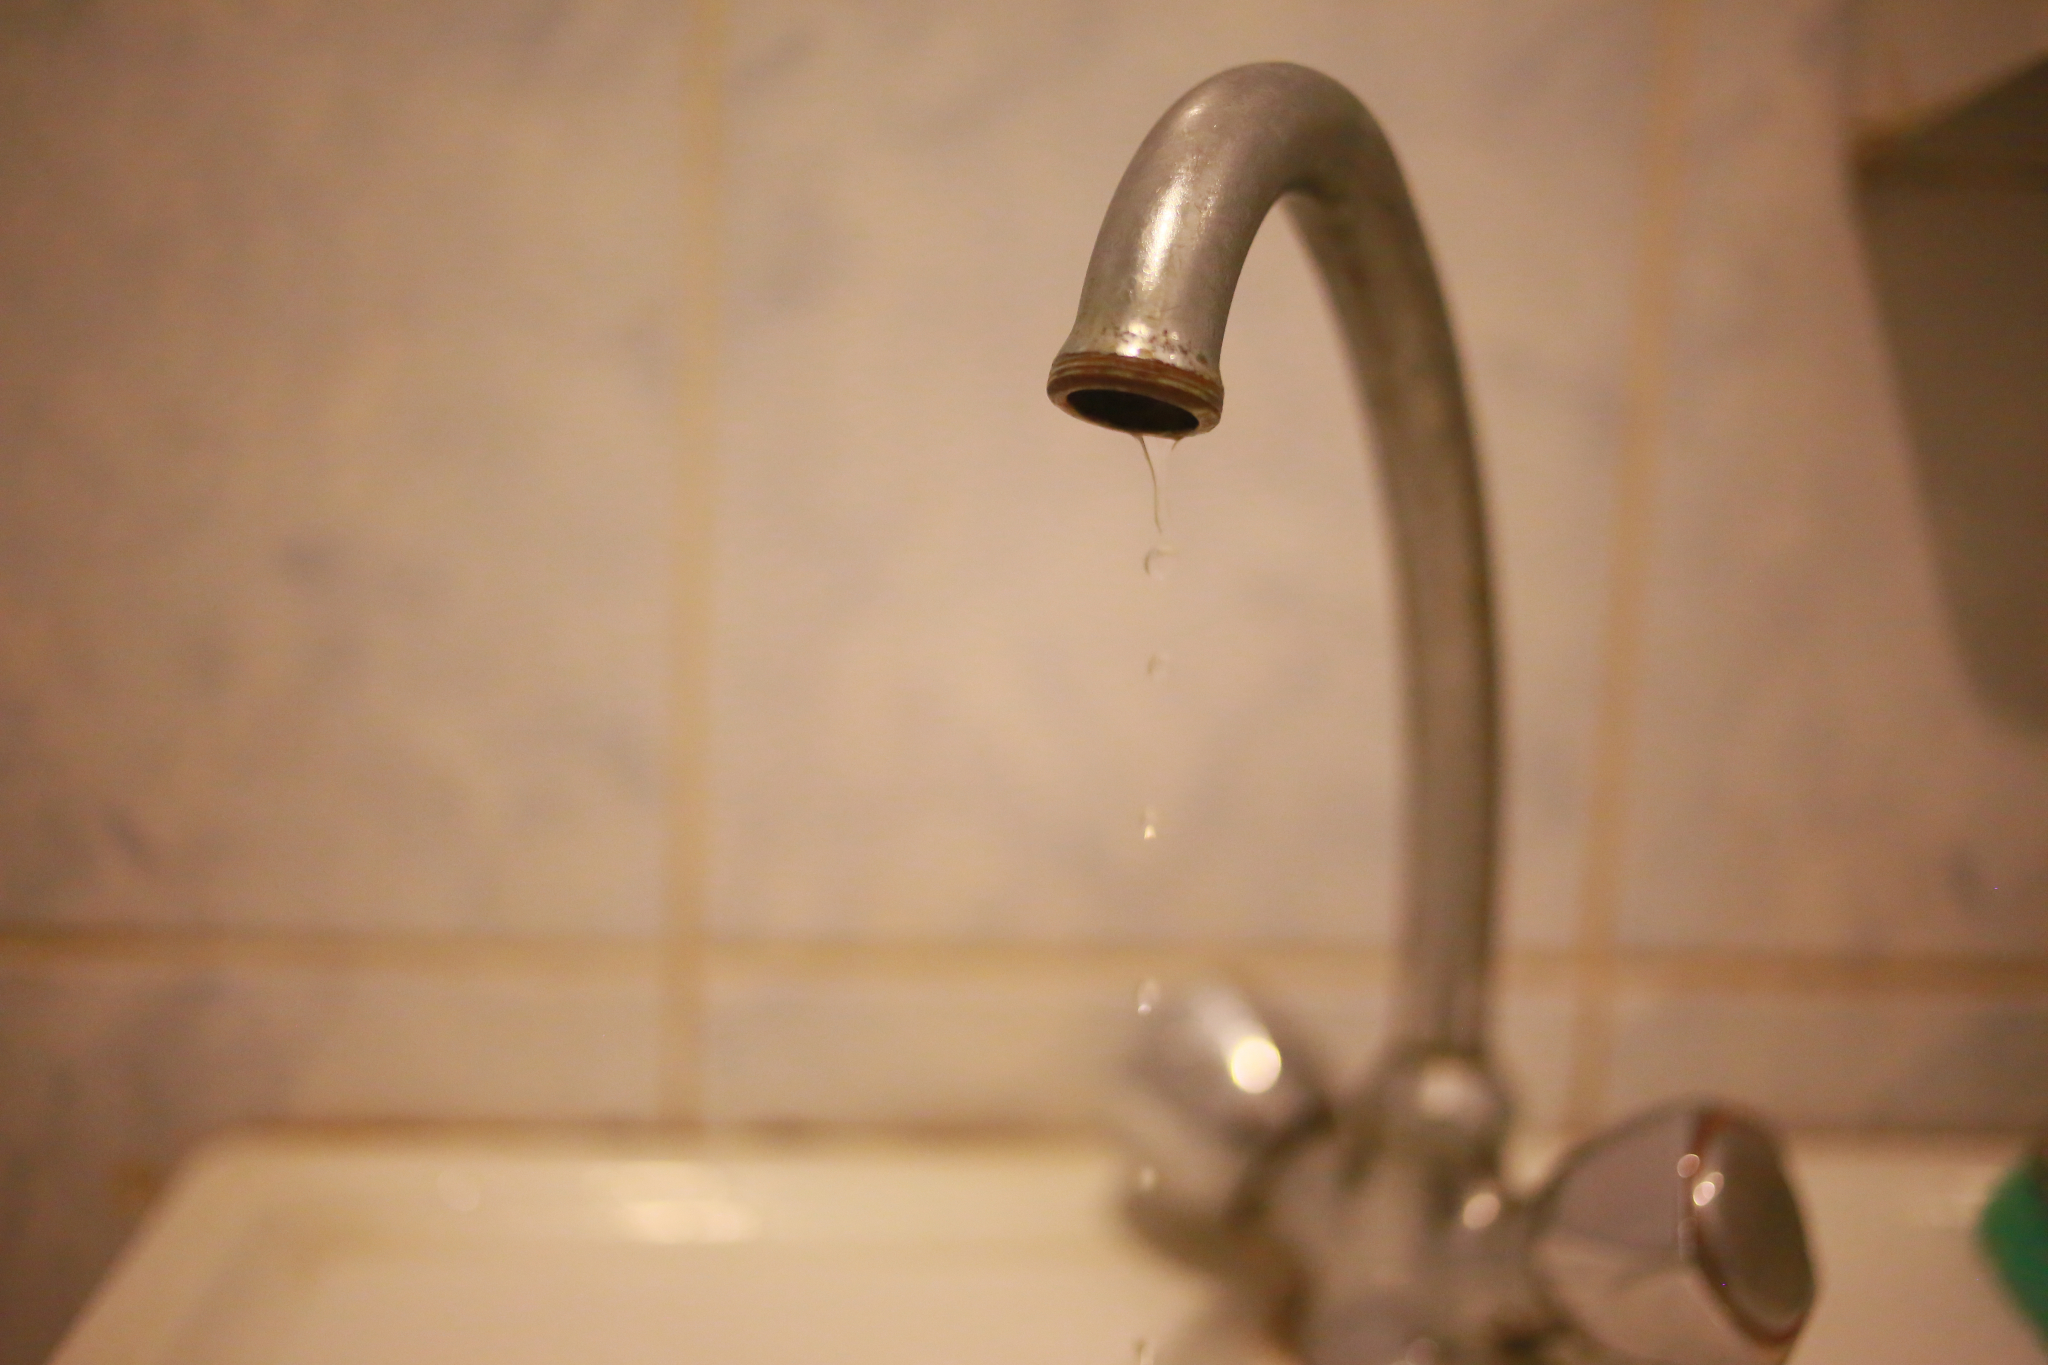 15 домов в Саранске останутся без горячей воды